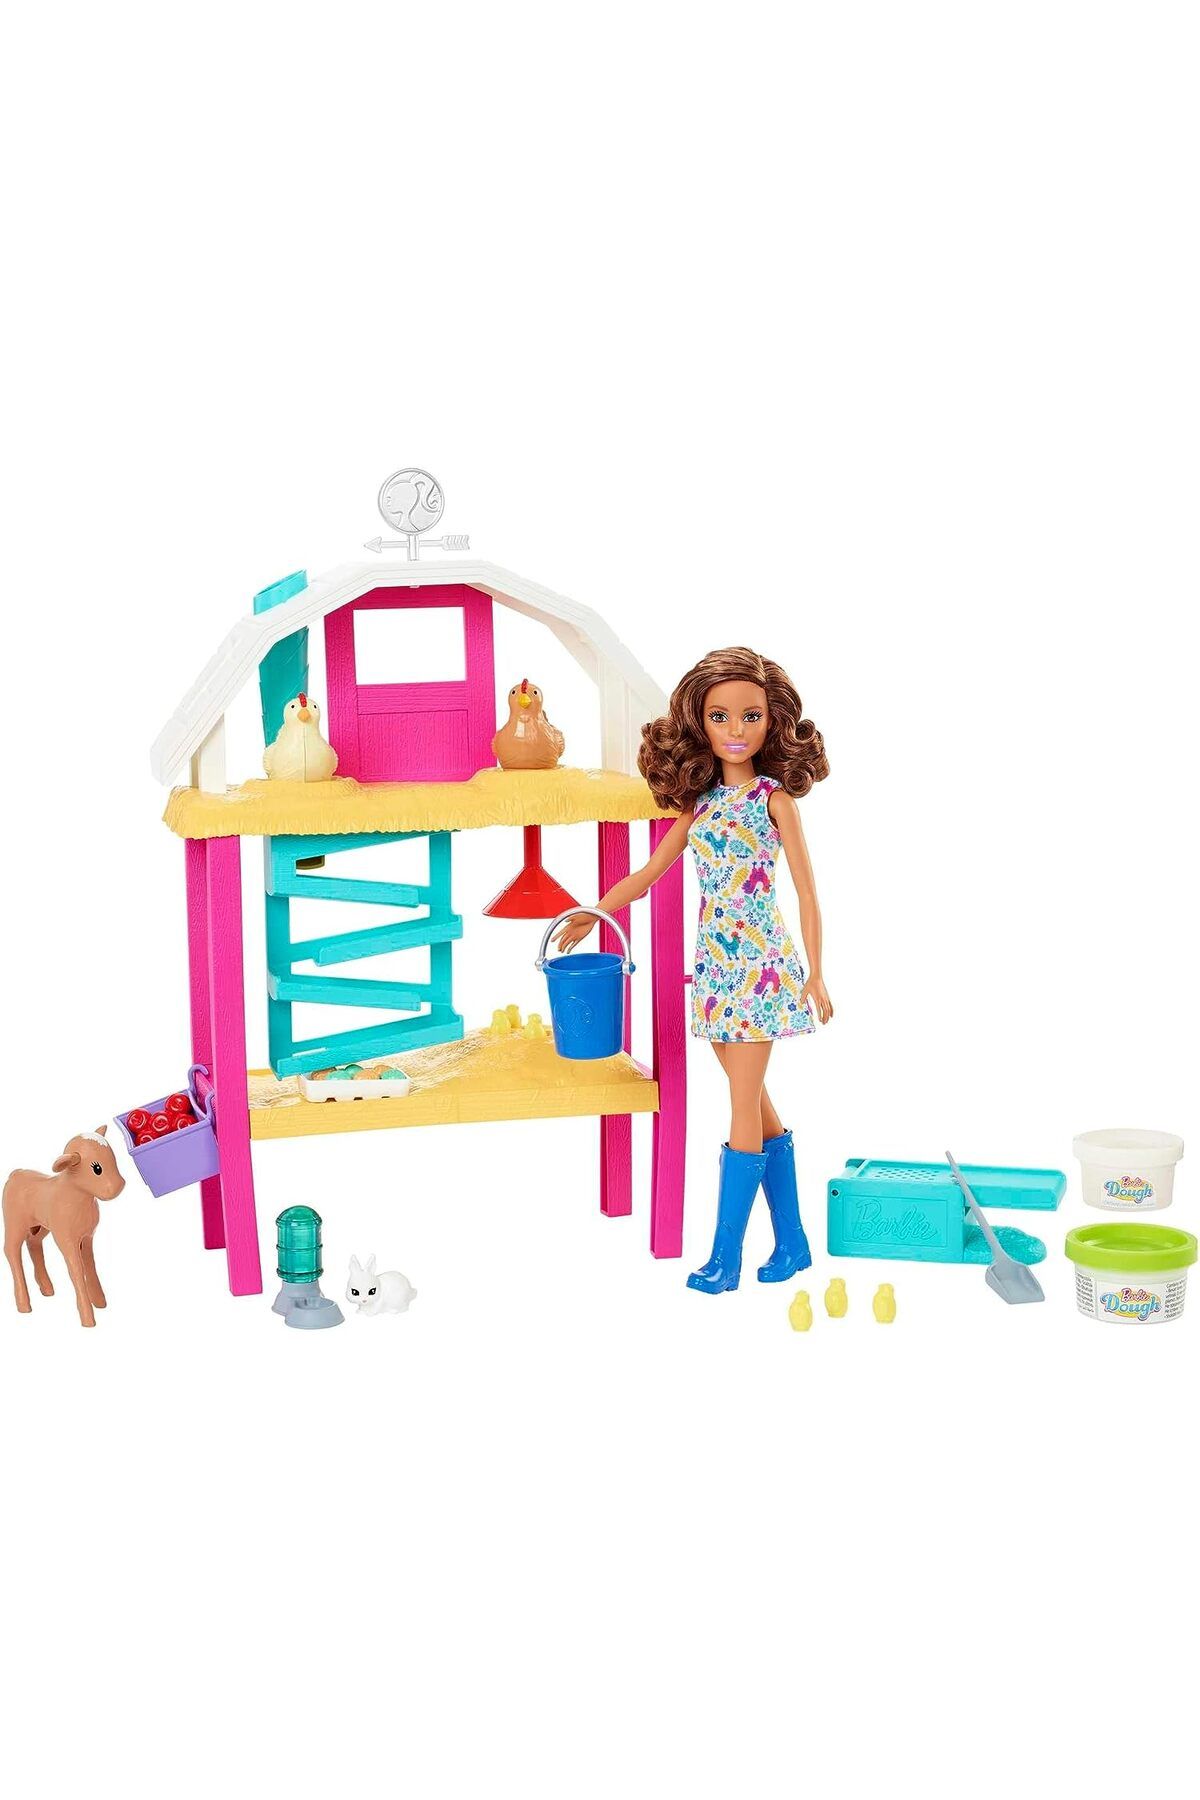 Barbie Eğlenceli Çiftlik Hayatı Oyun Seti, 4 Yaş Ve Üzeri, Hgy88 010101MATHGY88